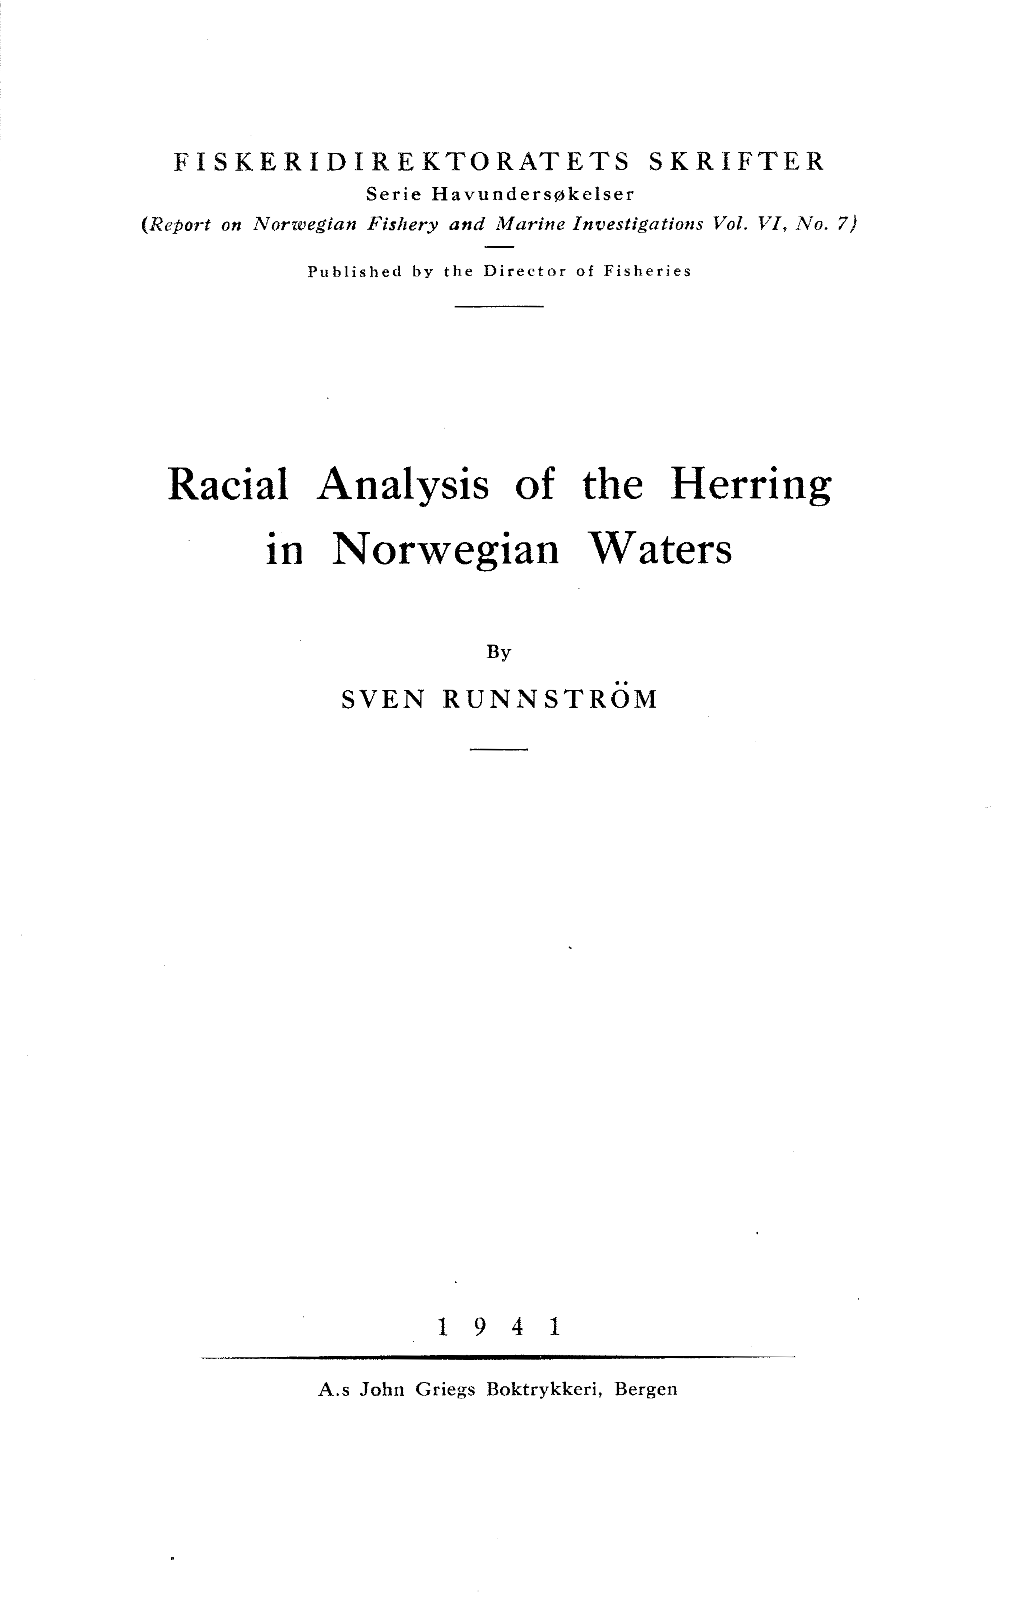 Racial Analysis of the Herring in Norwegian Waters